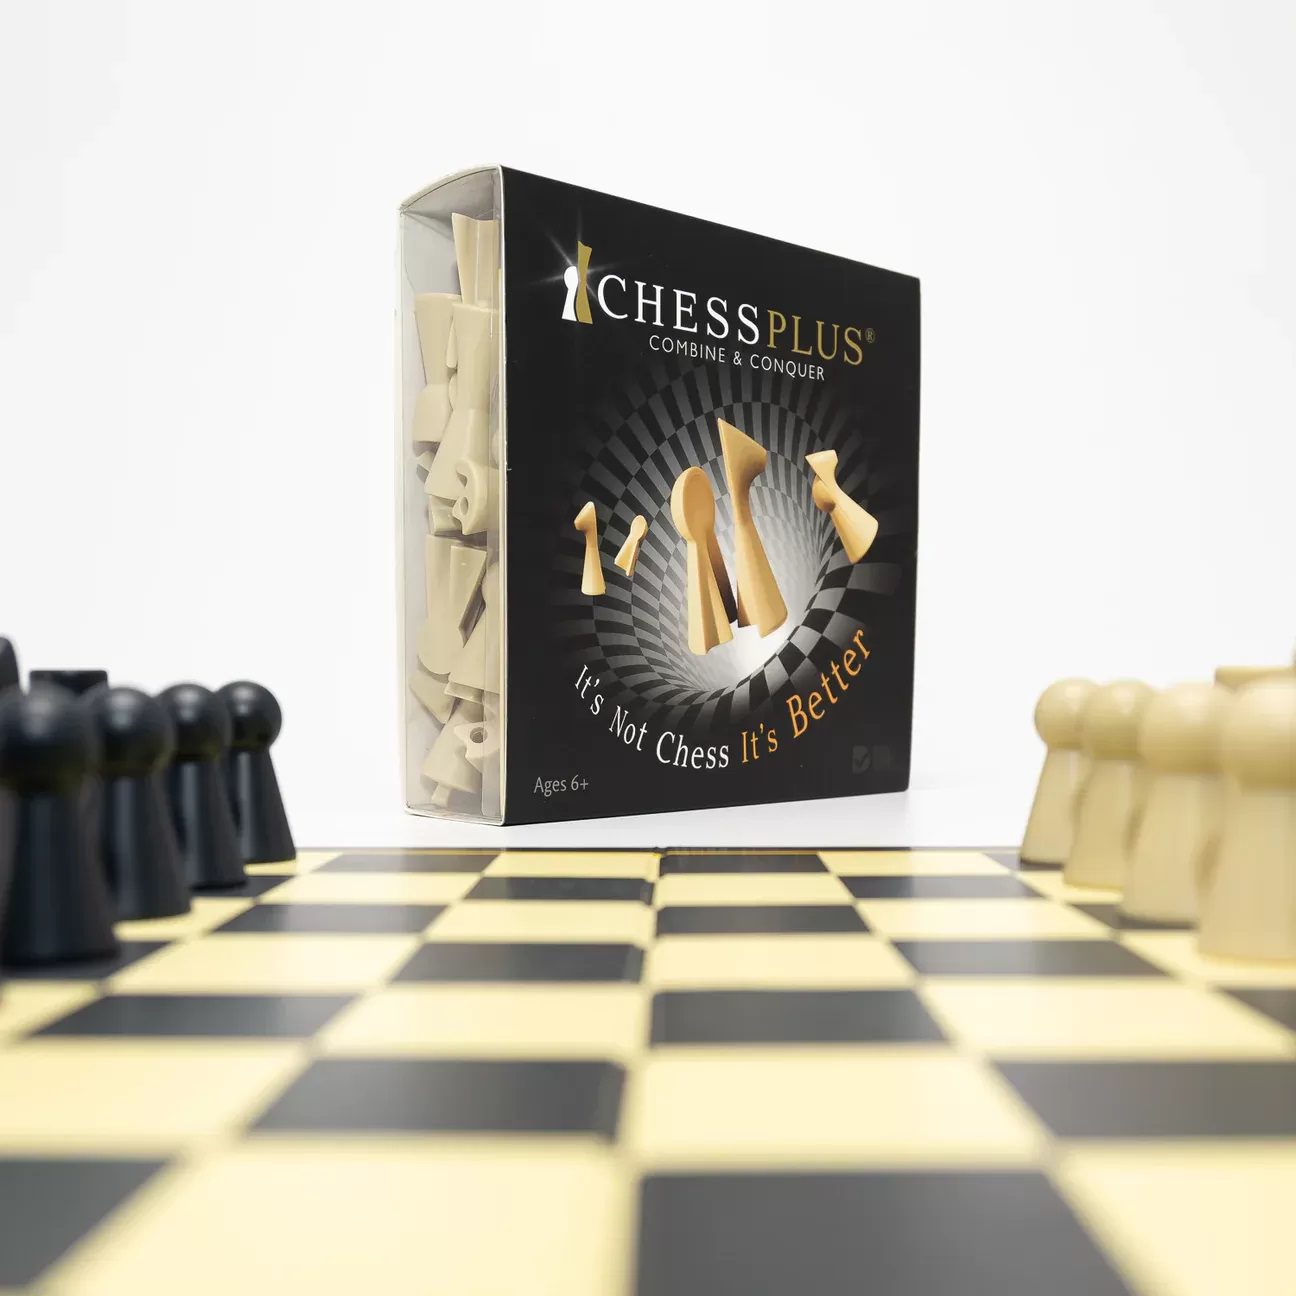 Chessplus - It's Not Chess. It's Better.